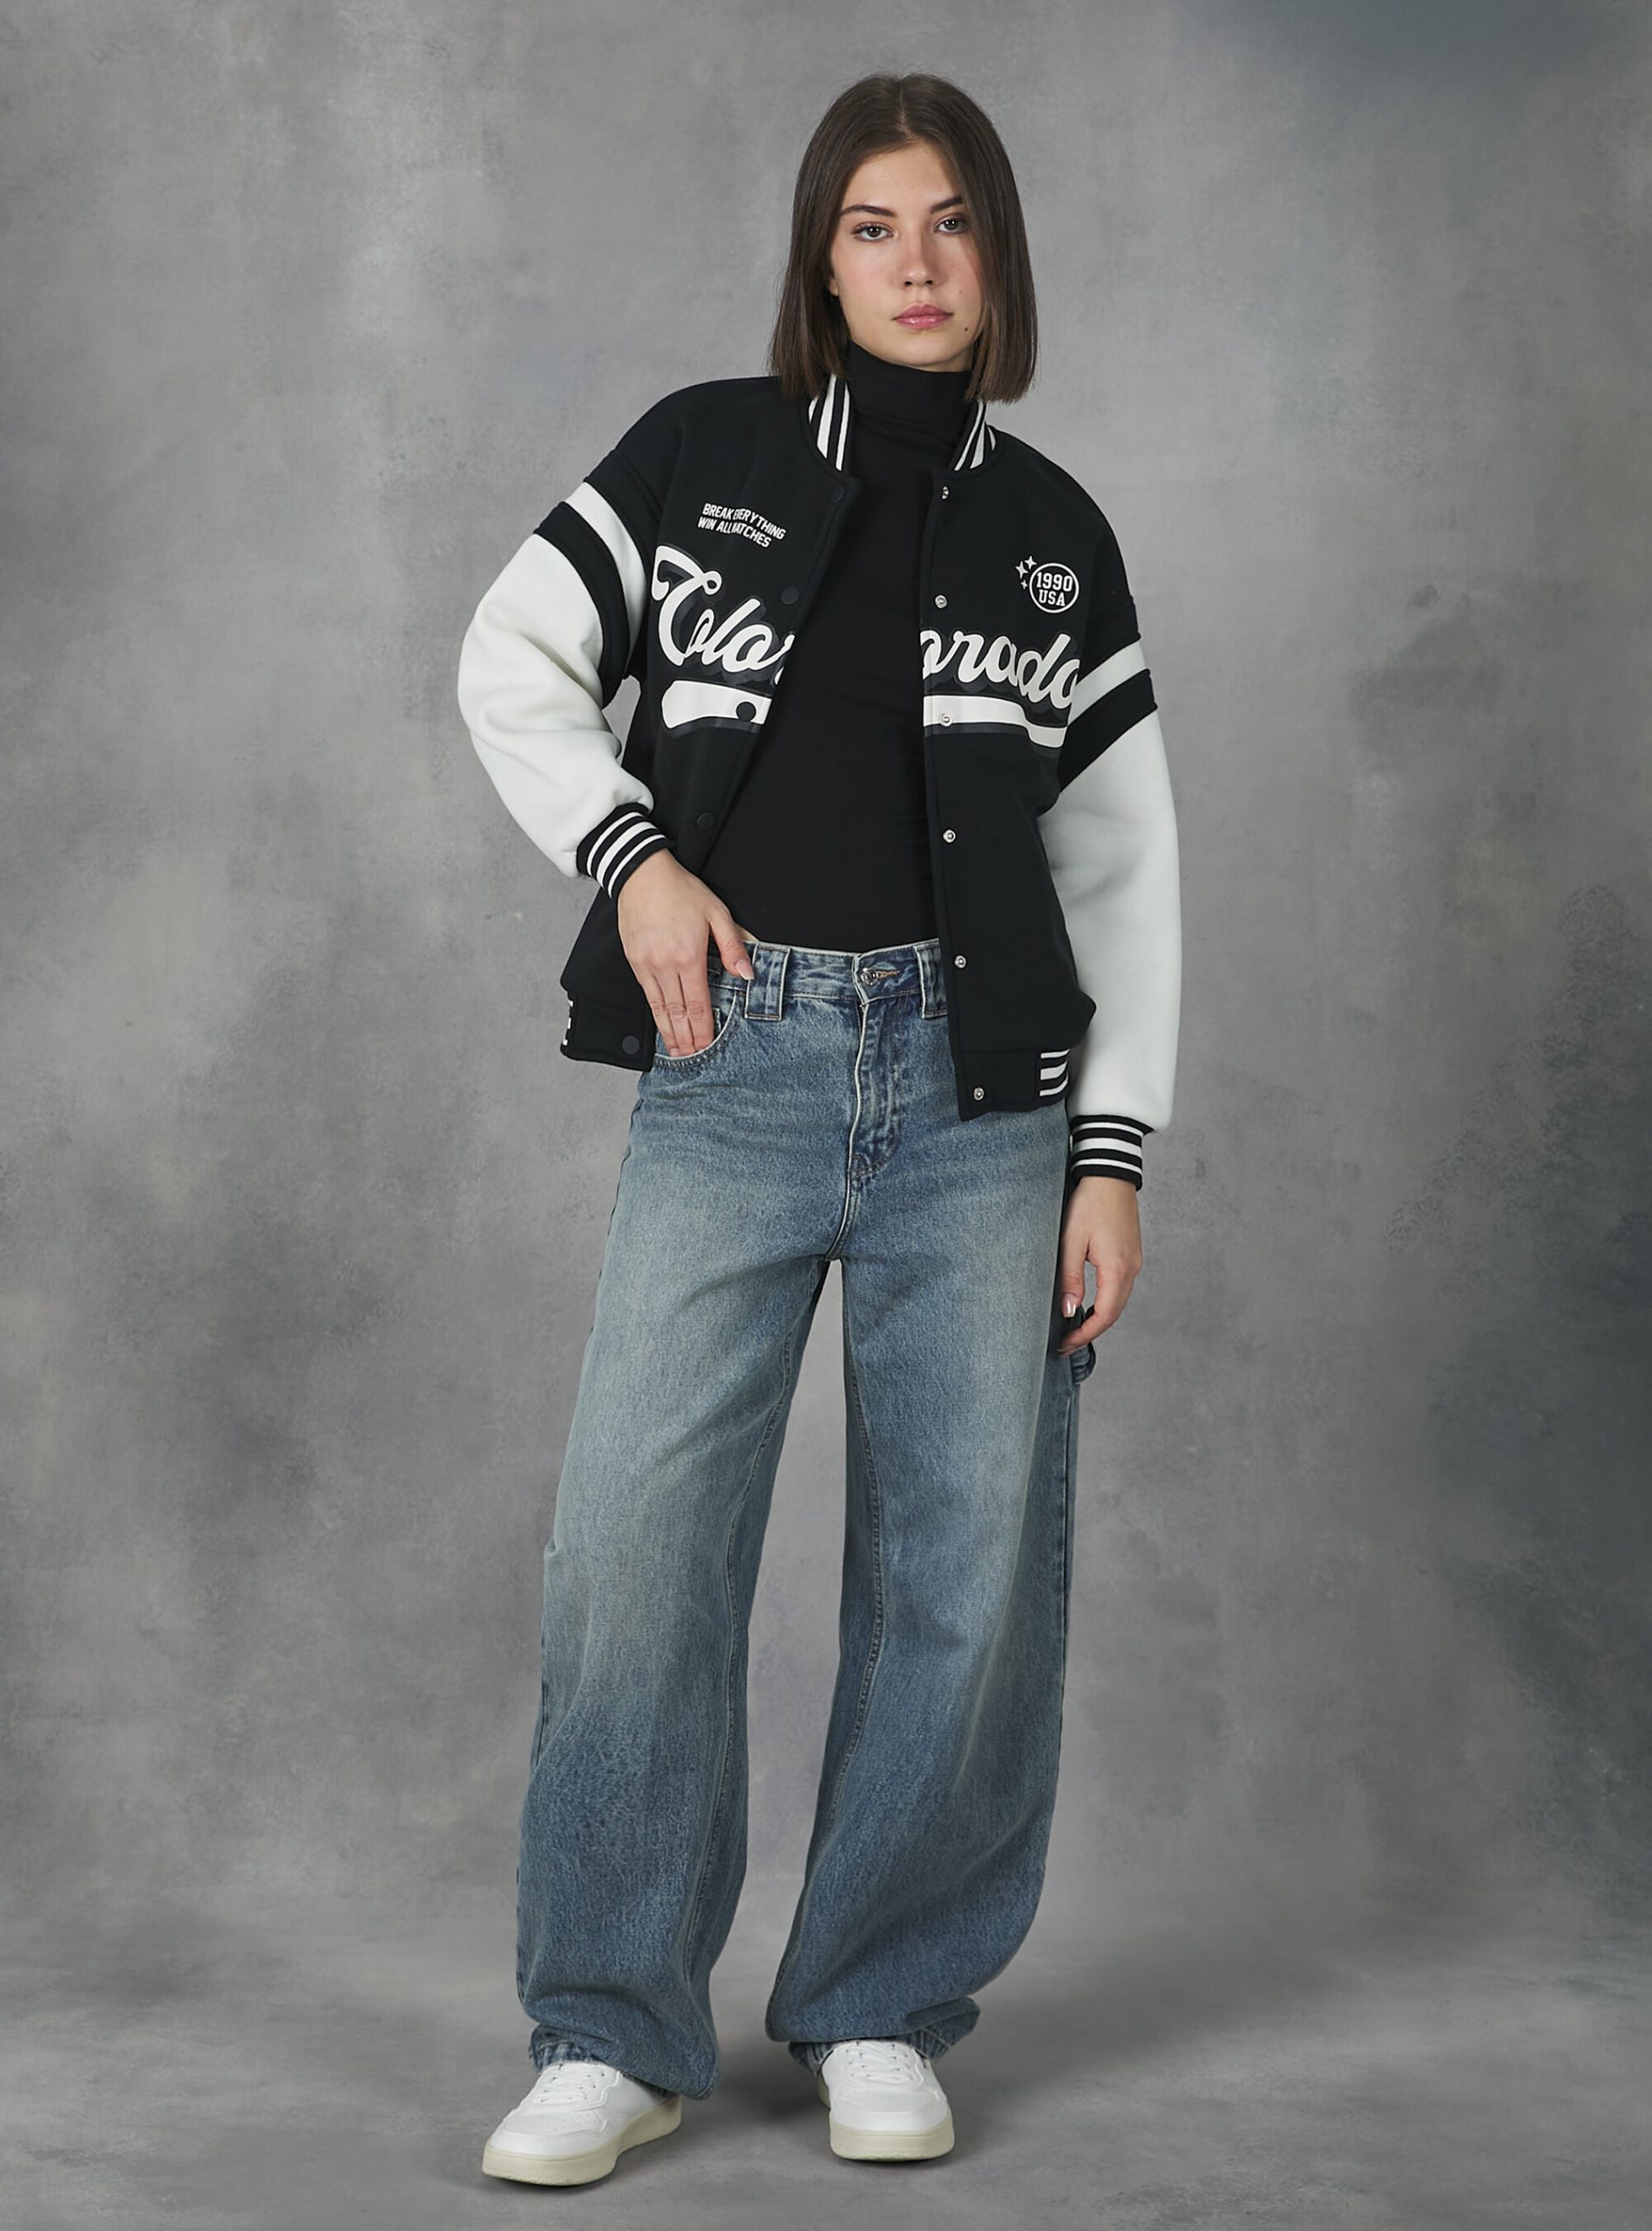 Frauen Alcott Sweatshirts Produktqualitätsmanagement Bk1 Black College Bomber Jacket With Print – 2